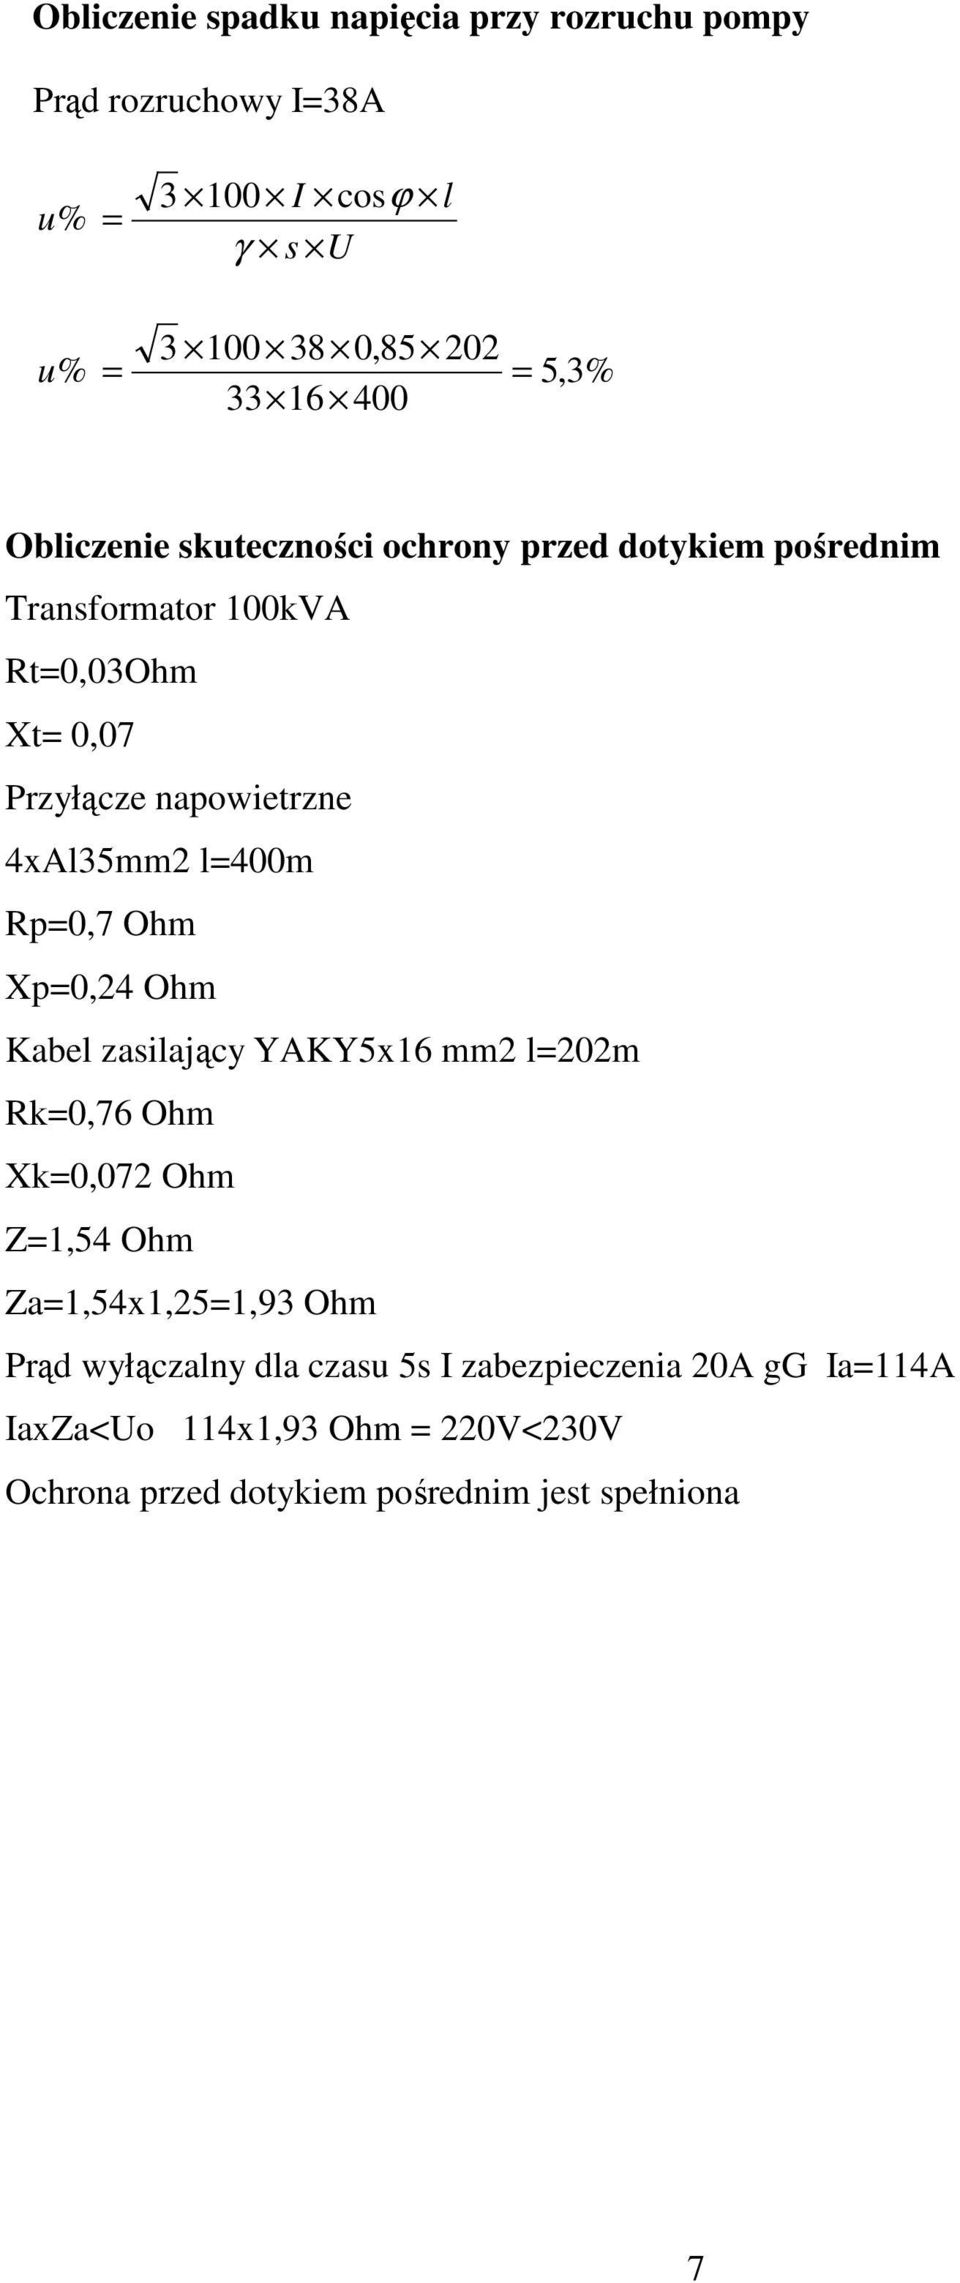 4xAl35mm2 l=400m Rp=0,7 Ohm Xp=0,24 Ohm Kabel zasilający YAKY5x16 mm2 l=202m Rk=0,76 Ohm Xk=0,072 Ohm Z=1,54 Ohm Za=1,54x1,25=1,93